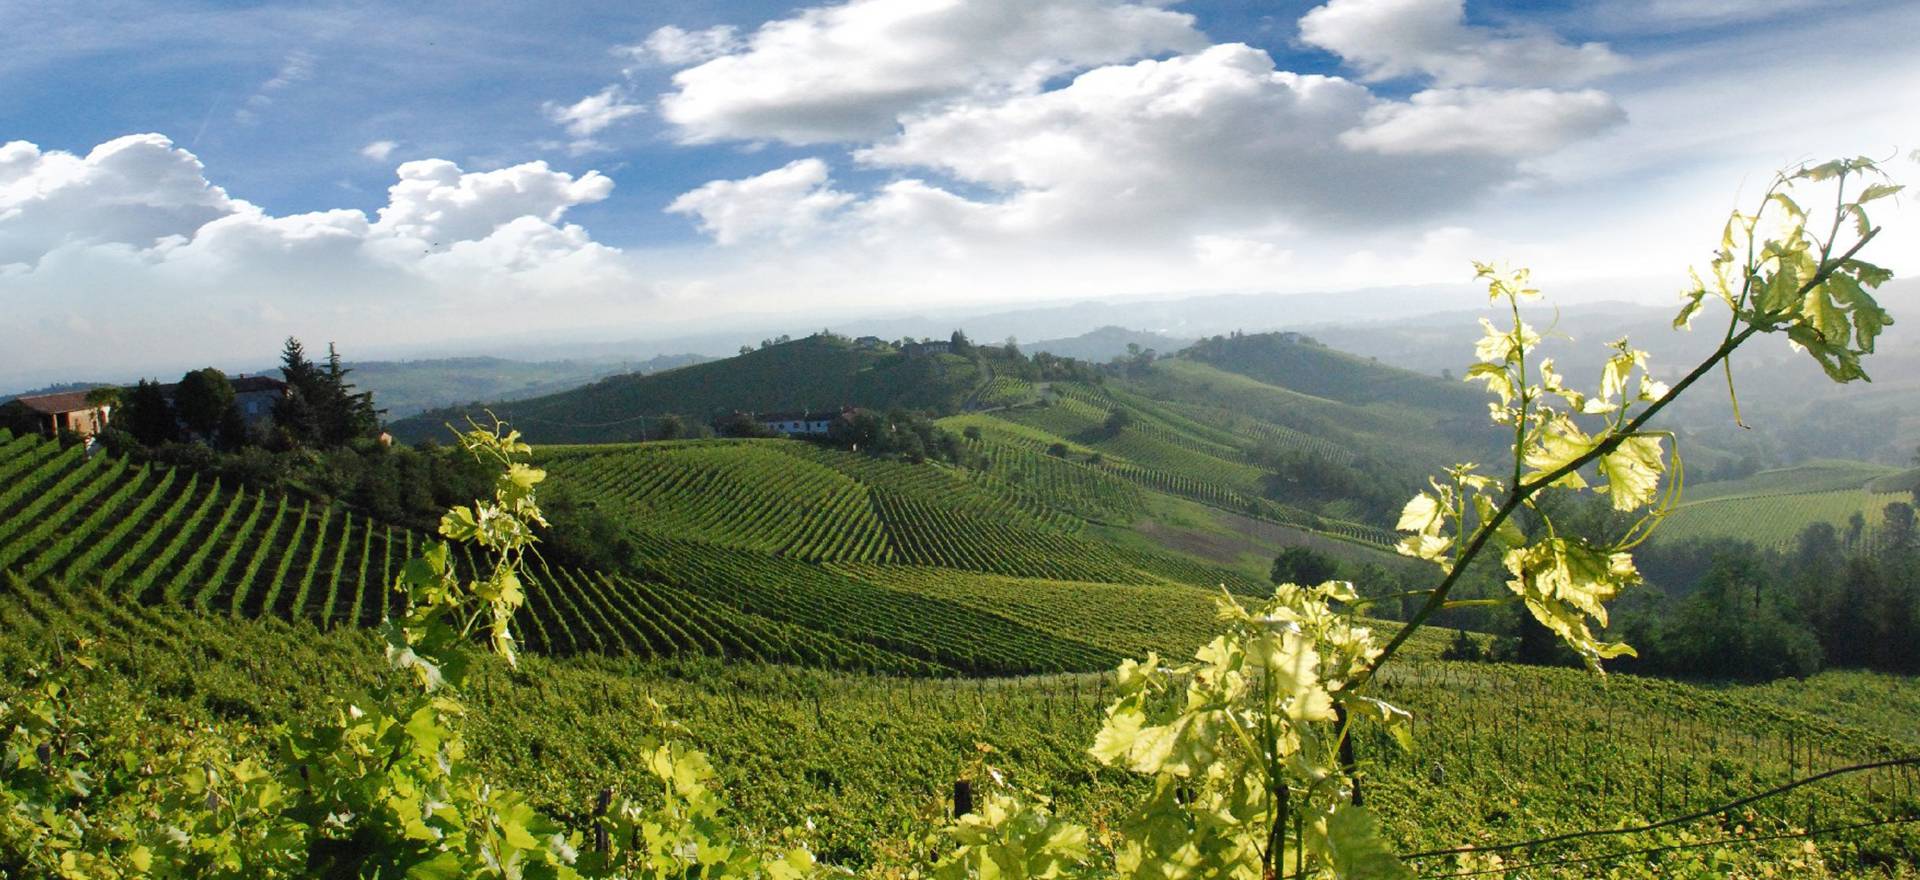 Agriturismo tussen de wijngaarden van Piemonte